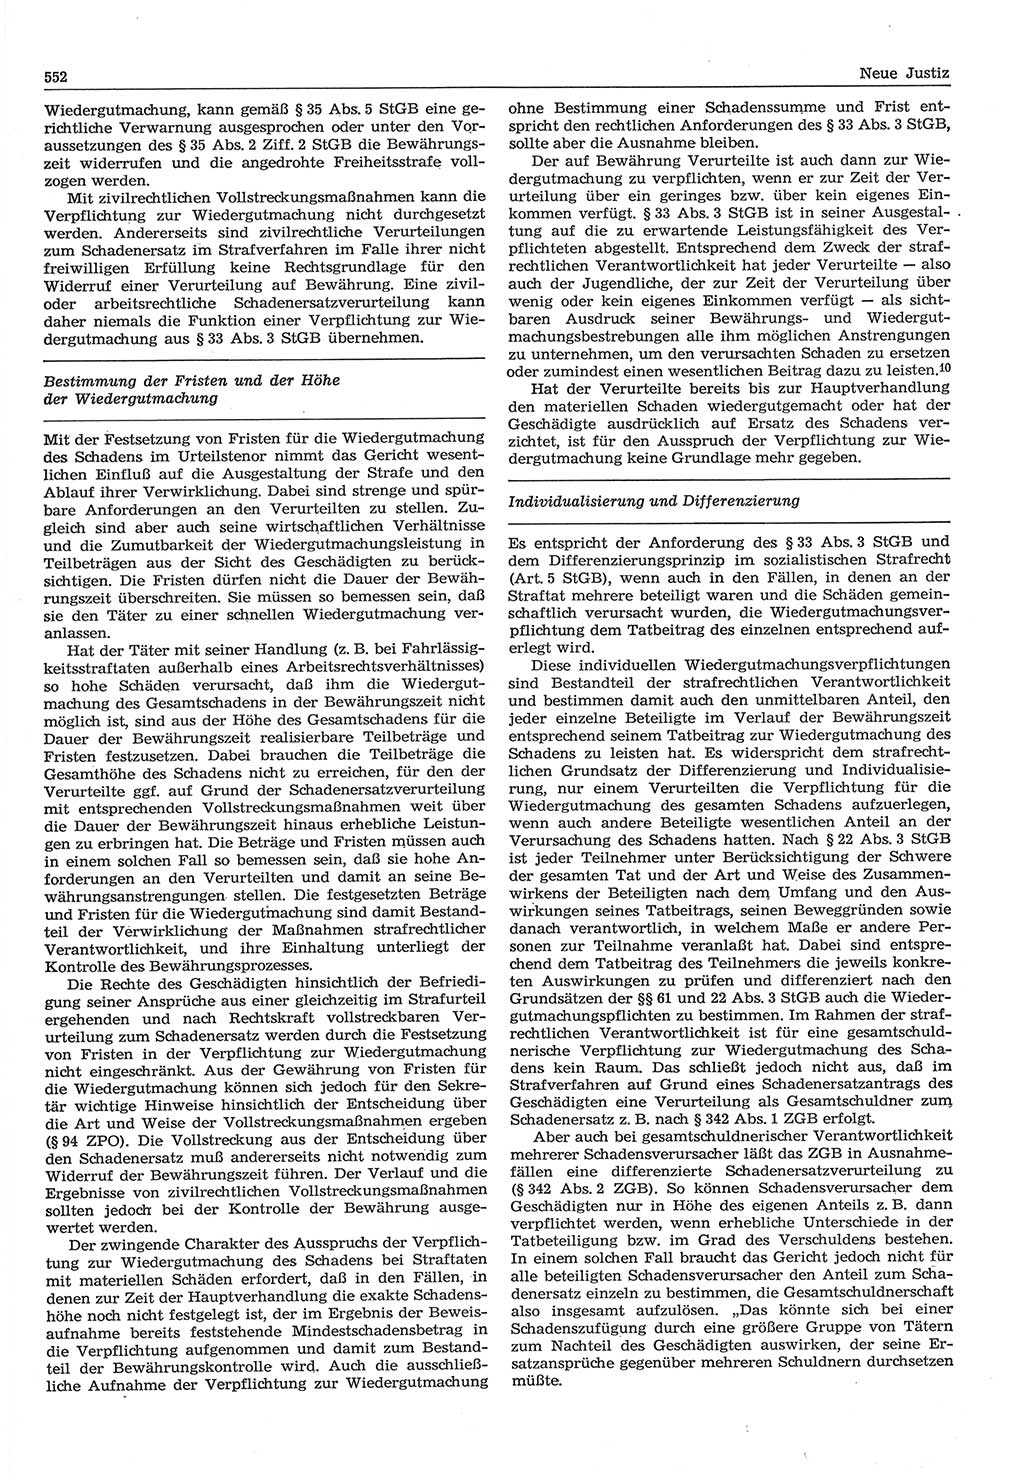 Neue Justiz (NJ), Zeitschrift für Recht und Rechtswissenschaft-Zeitschrift, sozialistisches Recht und Gesetzlichkeit, 31. Jahrgang 1977, Seite 552 (NJ DDR 1977, S. 552)